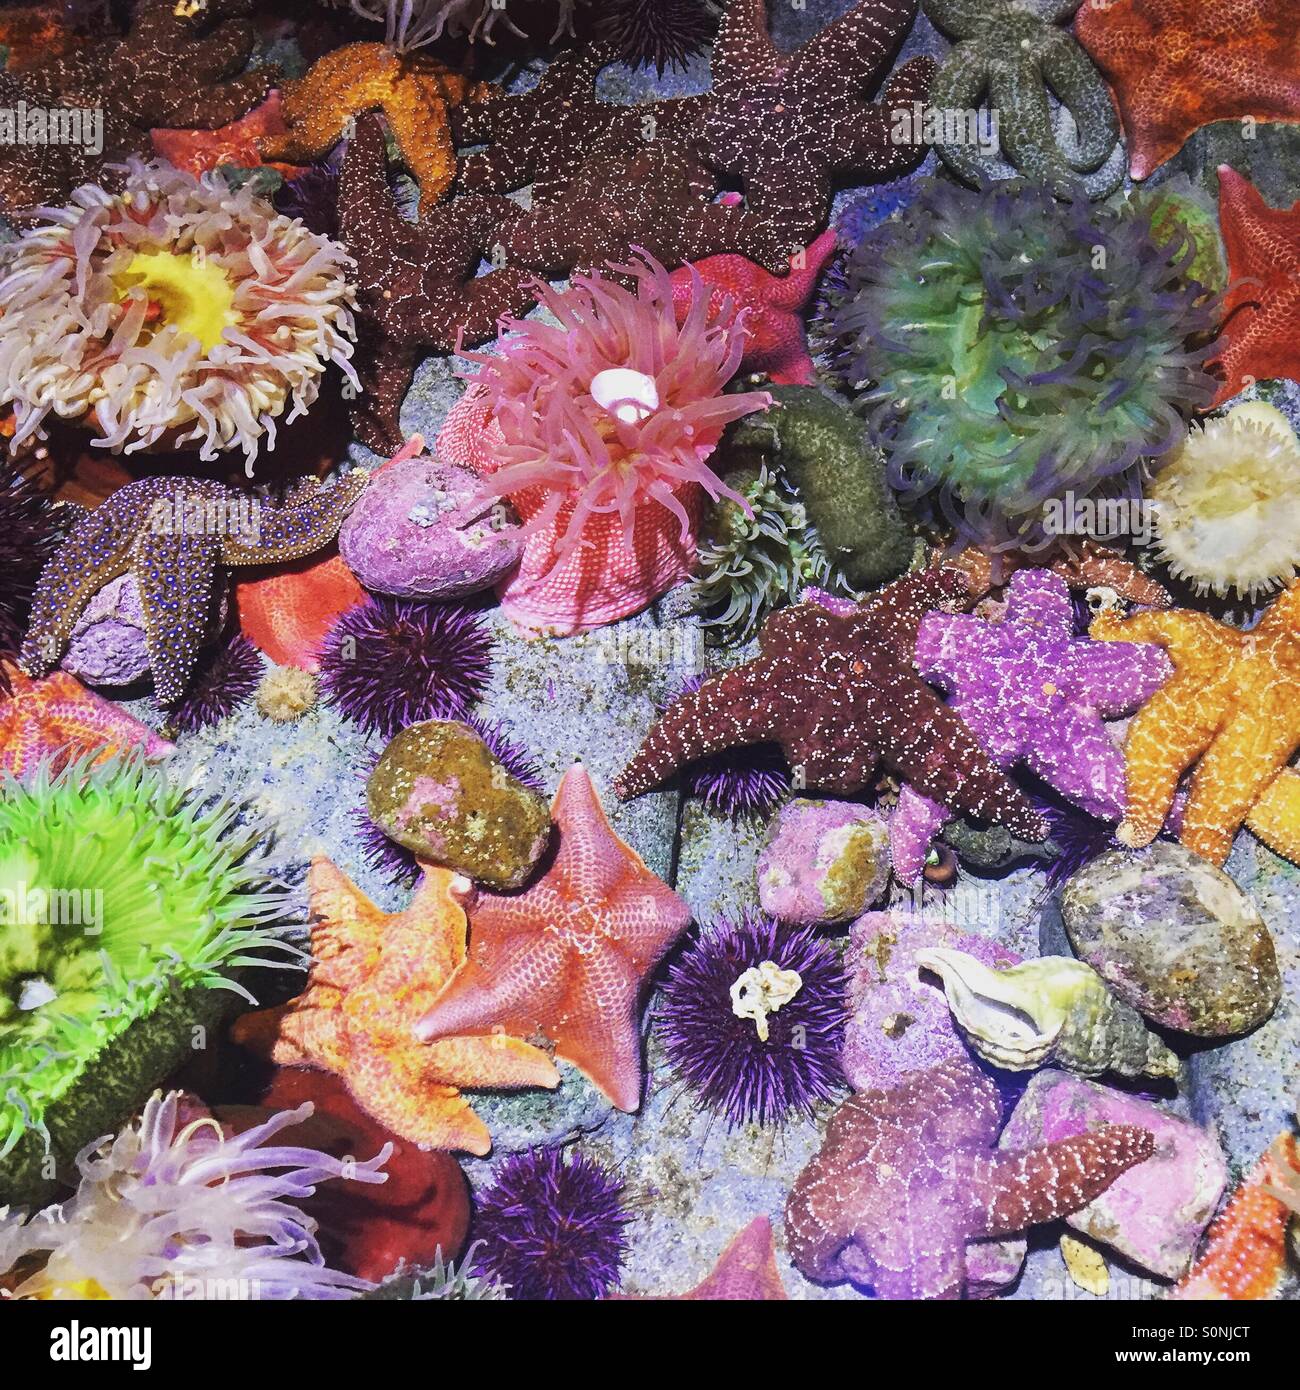 Farbenfrohe Unterwasserwelt Stockfoto